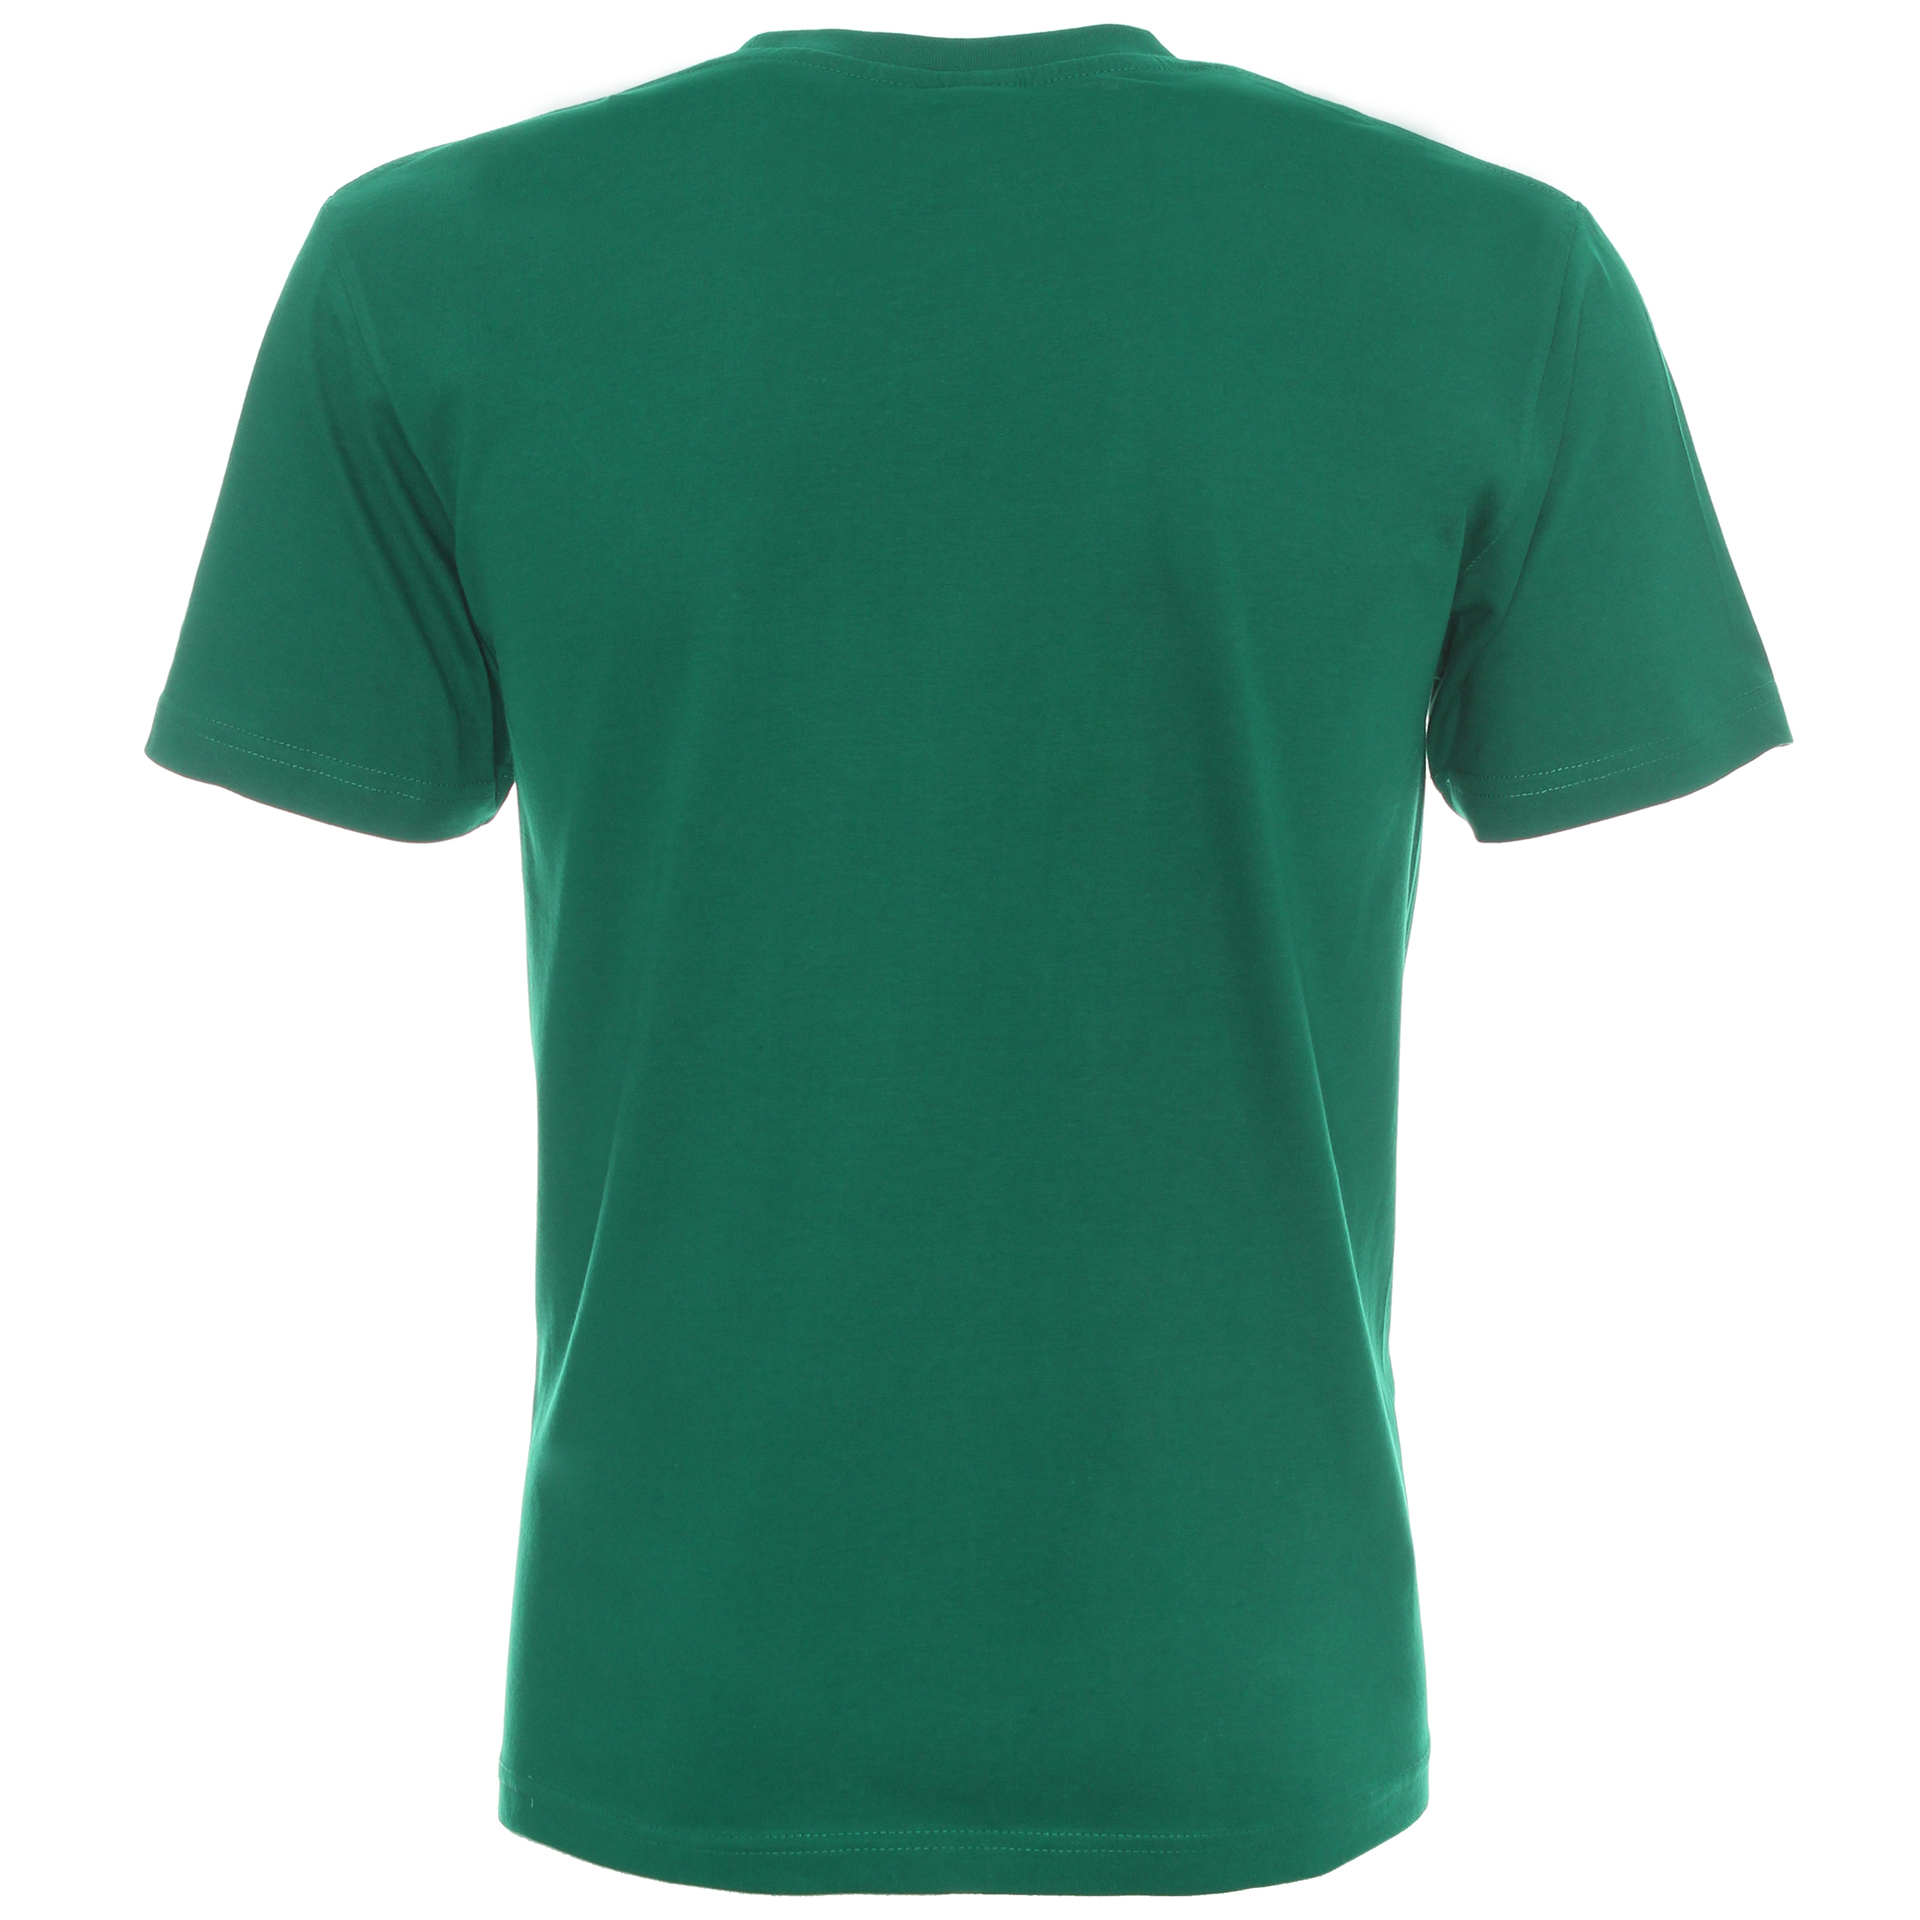 Koszulka Promostars Heavy 170 - zielona